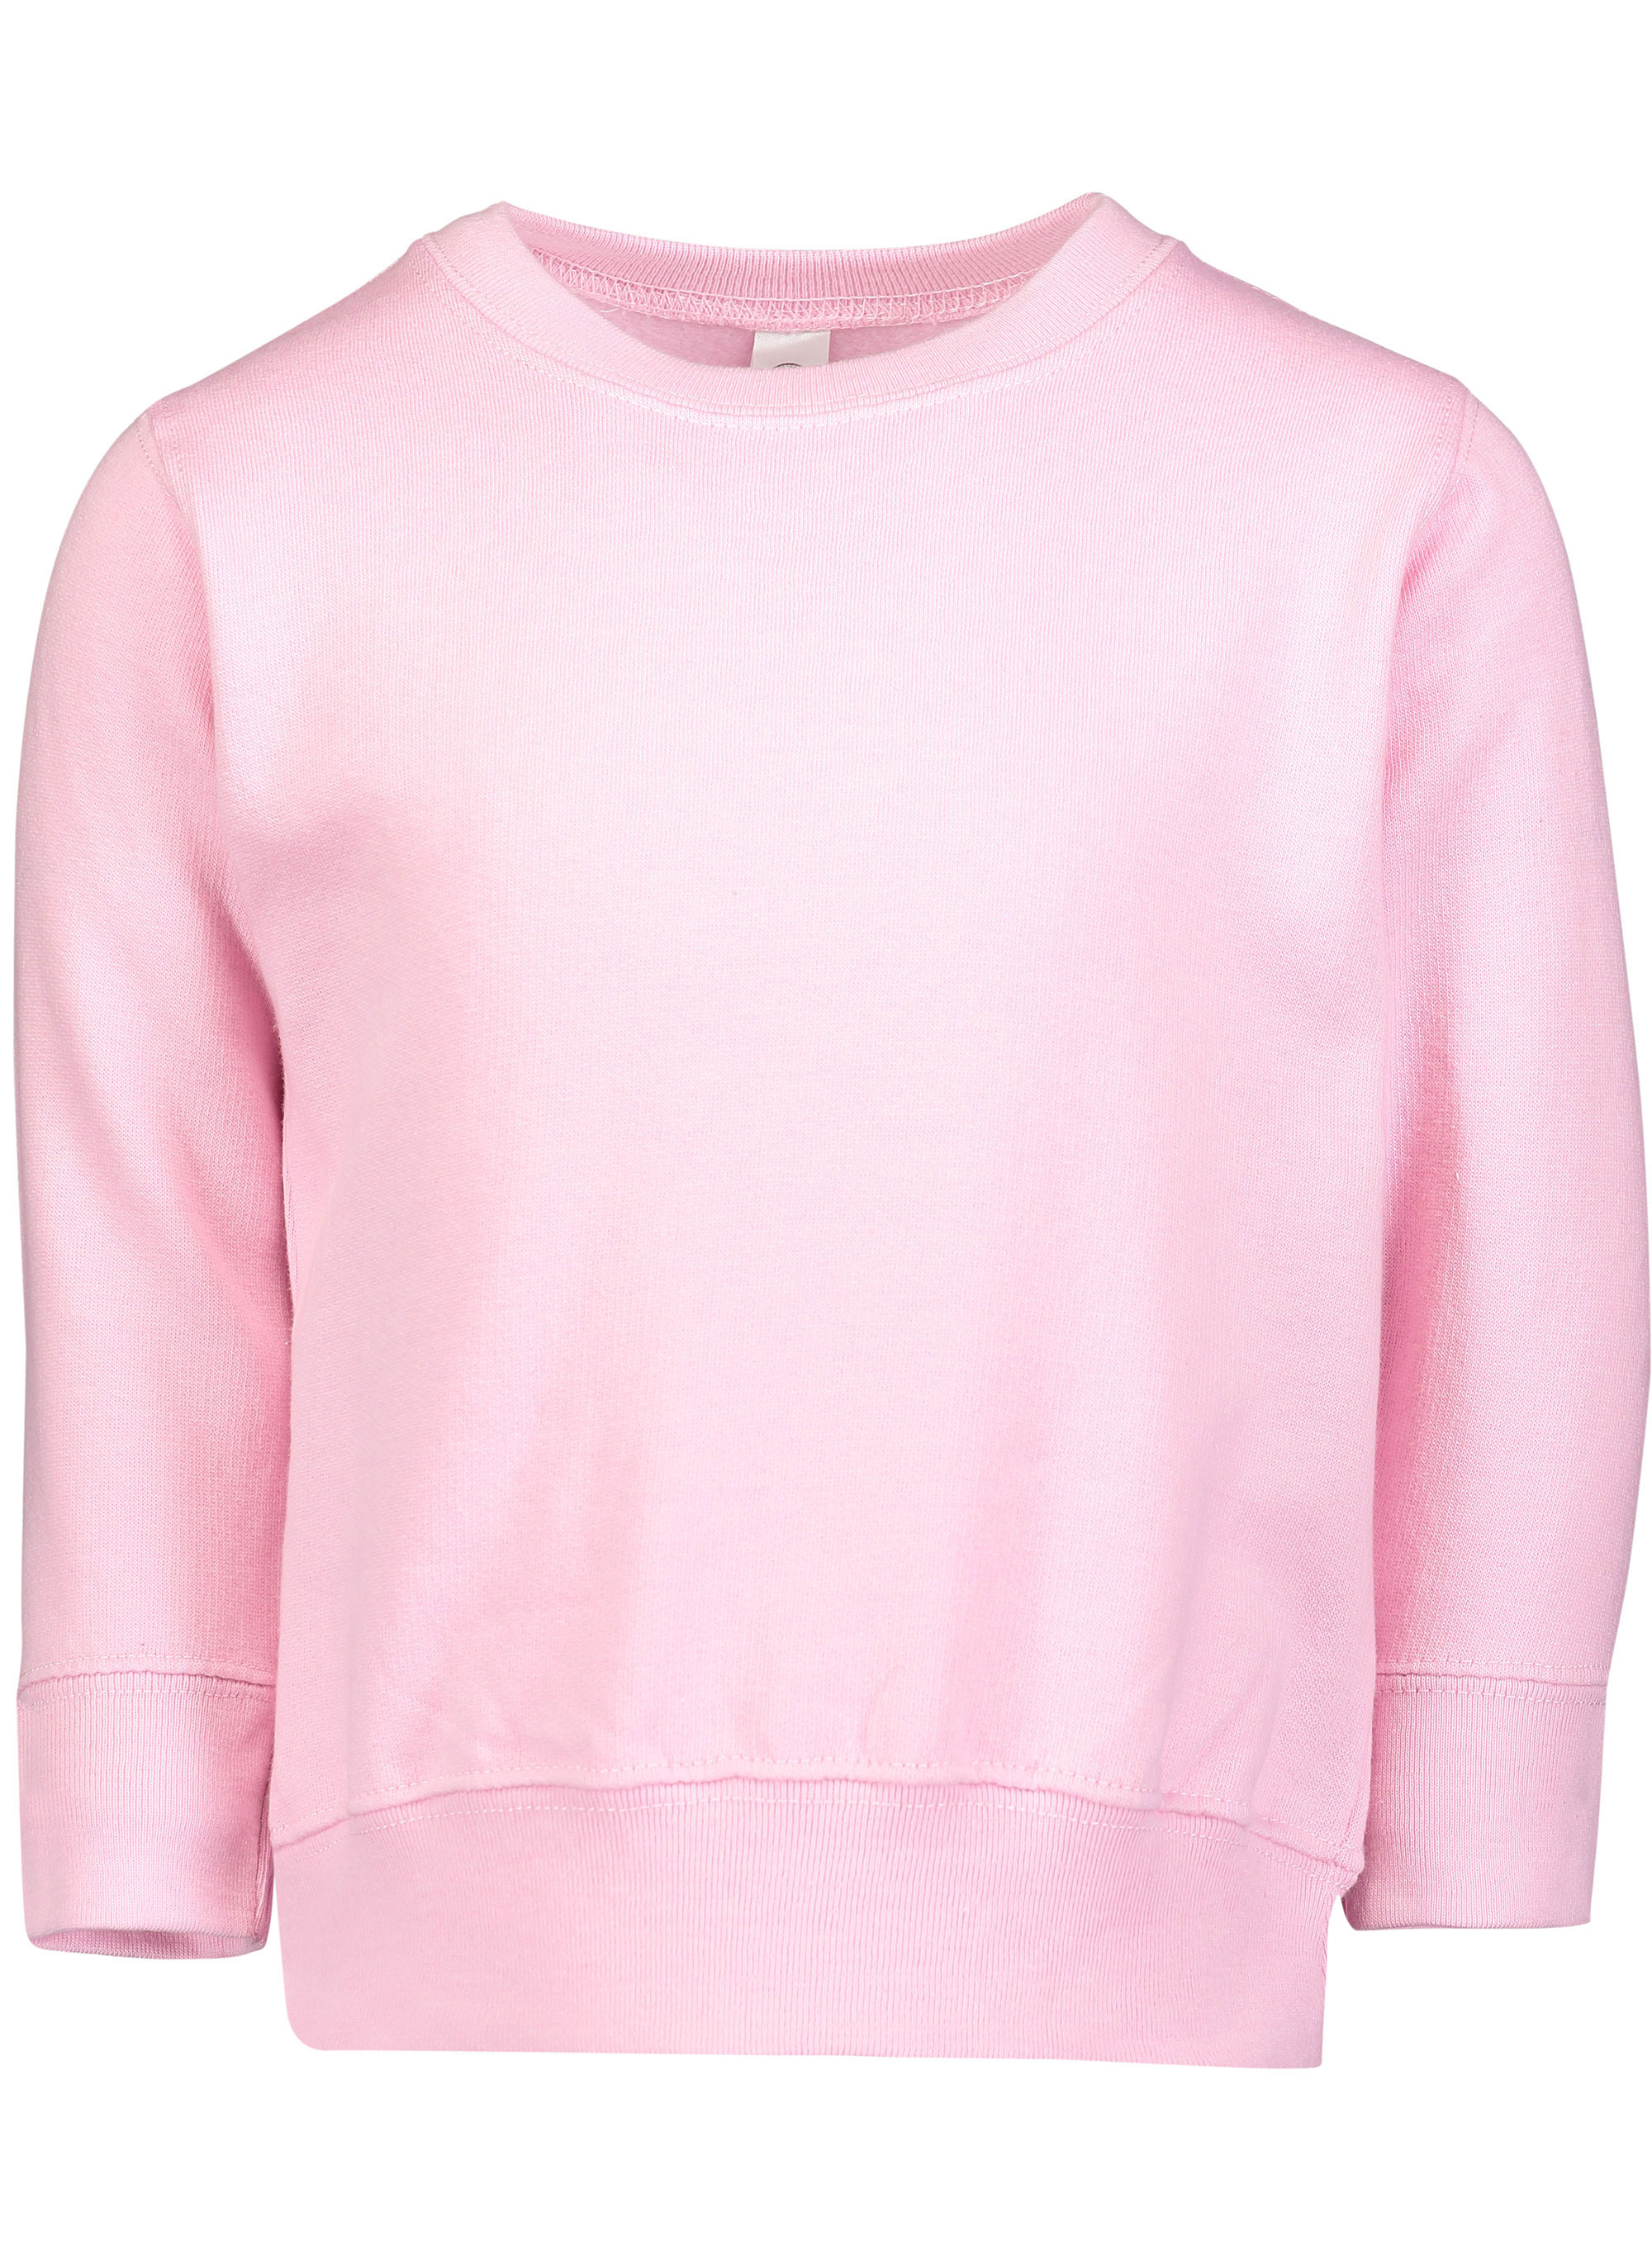 Rabbit Skins® 3317 Toddler Fleece Sweatshirt